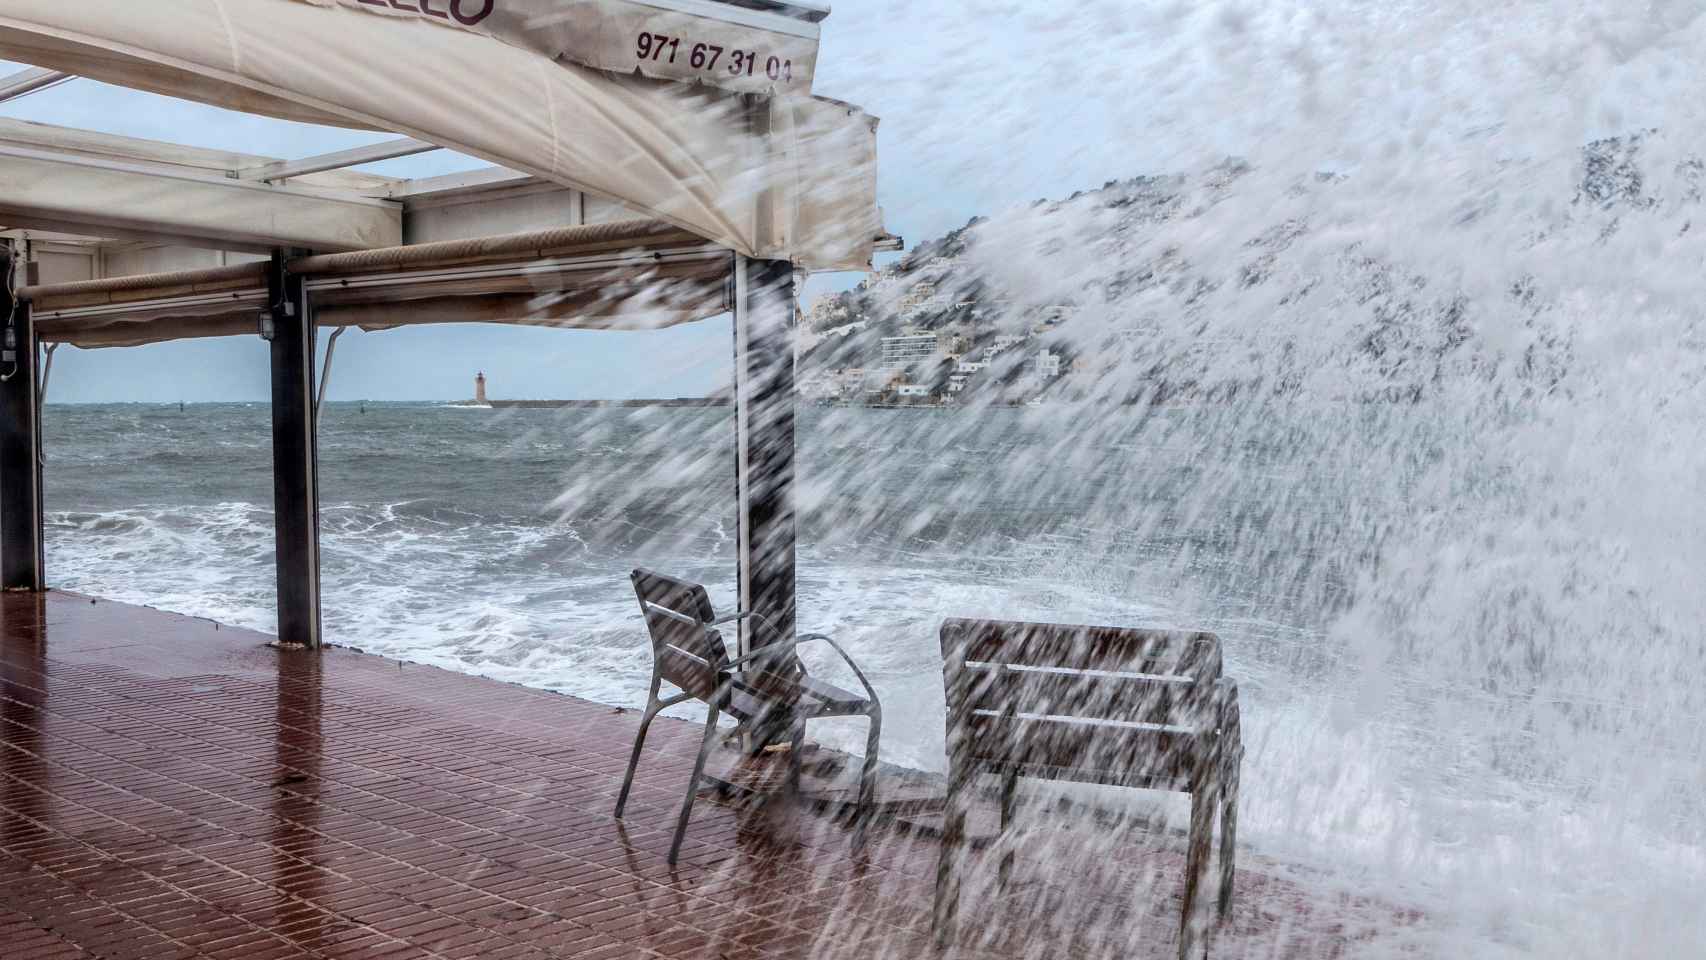 Una ola rompe en el puerto de Andrach (Mallorca) durante la tormenta este viernes. Cati Cladera